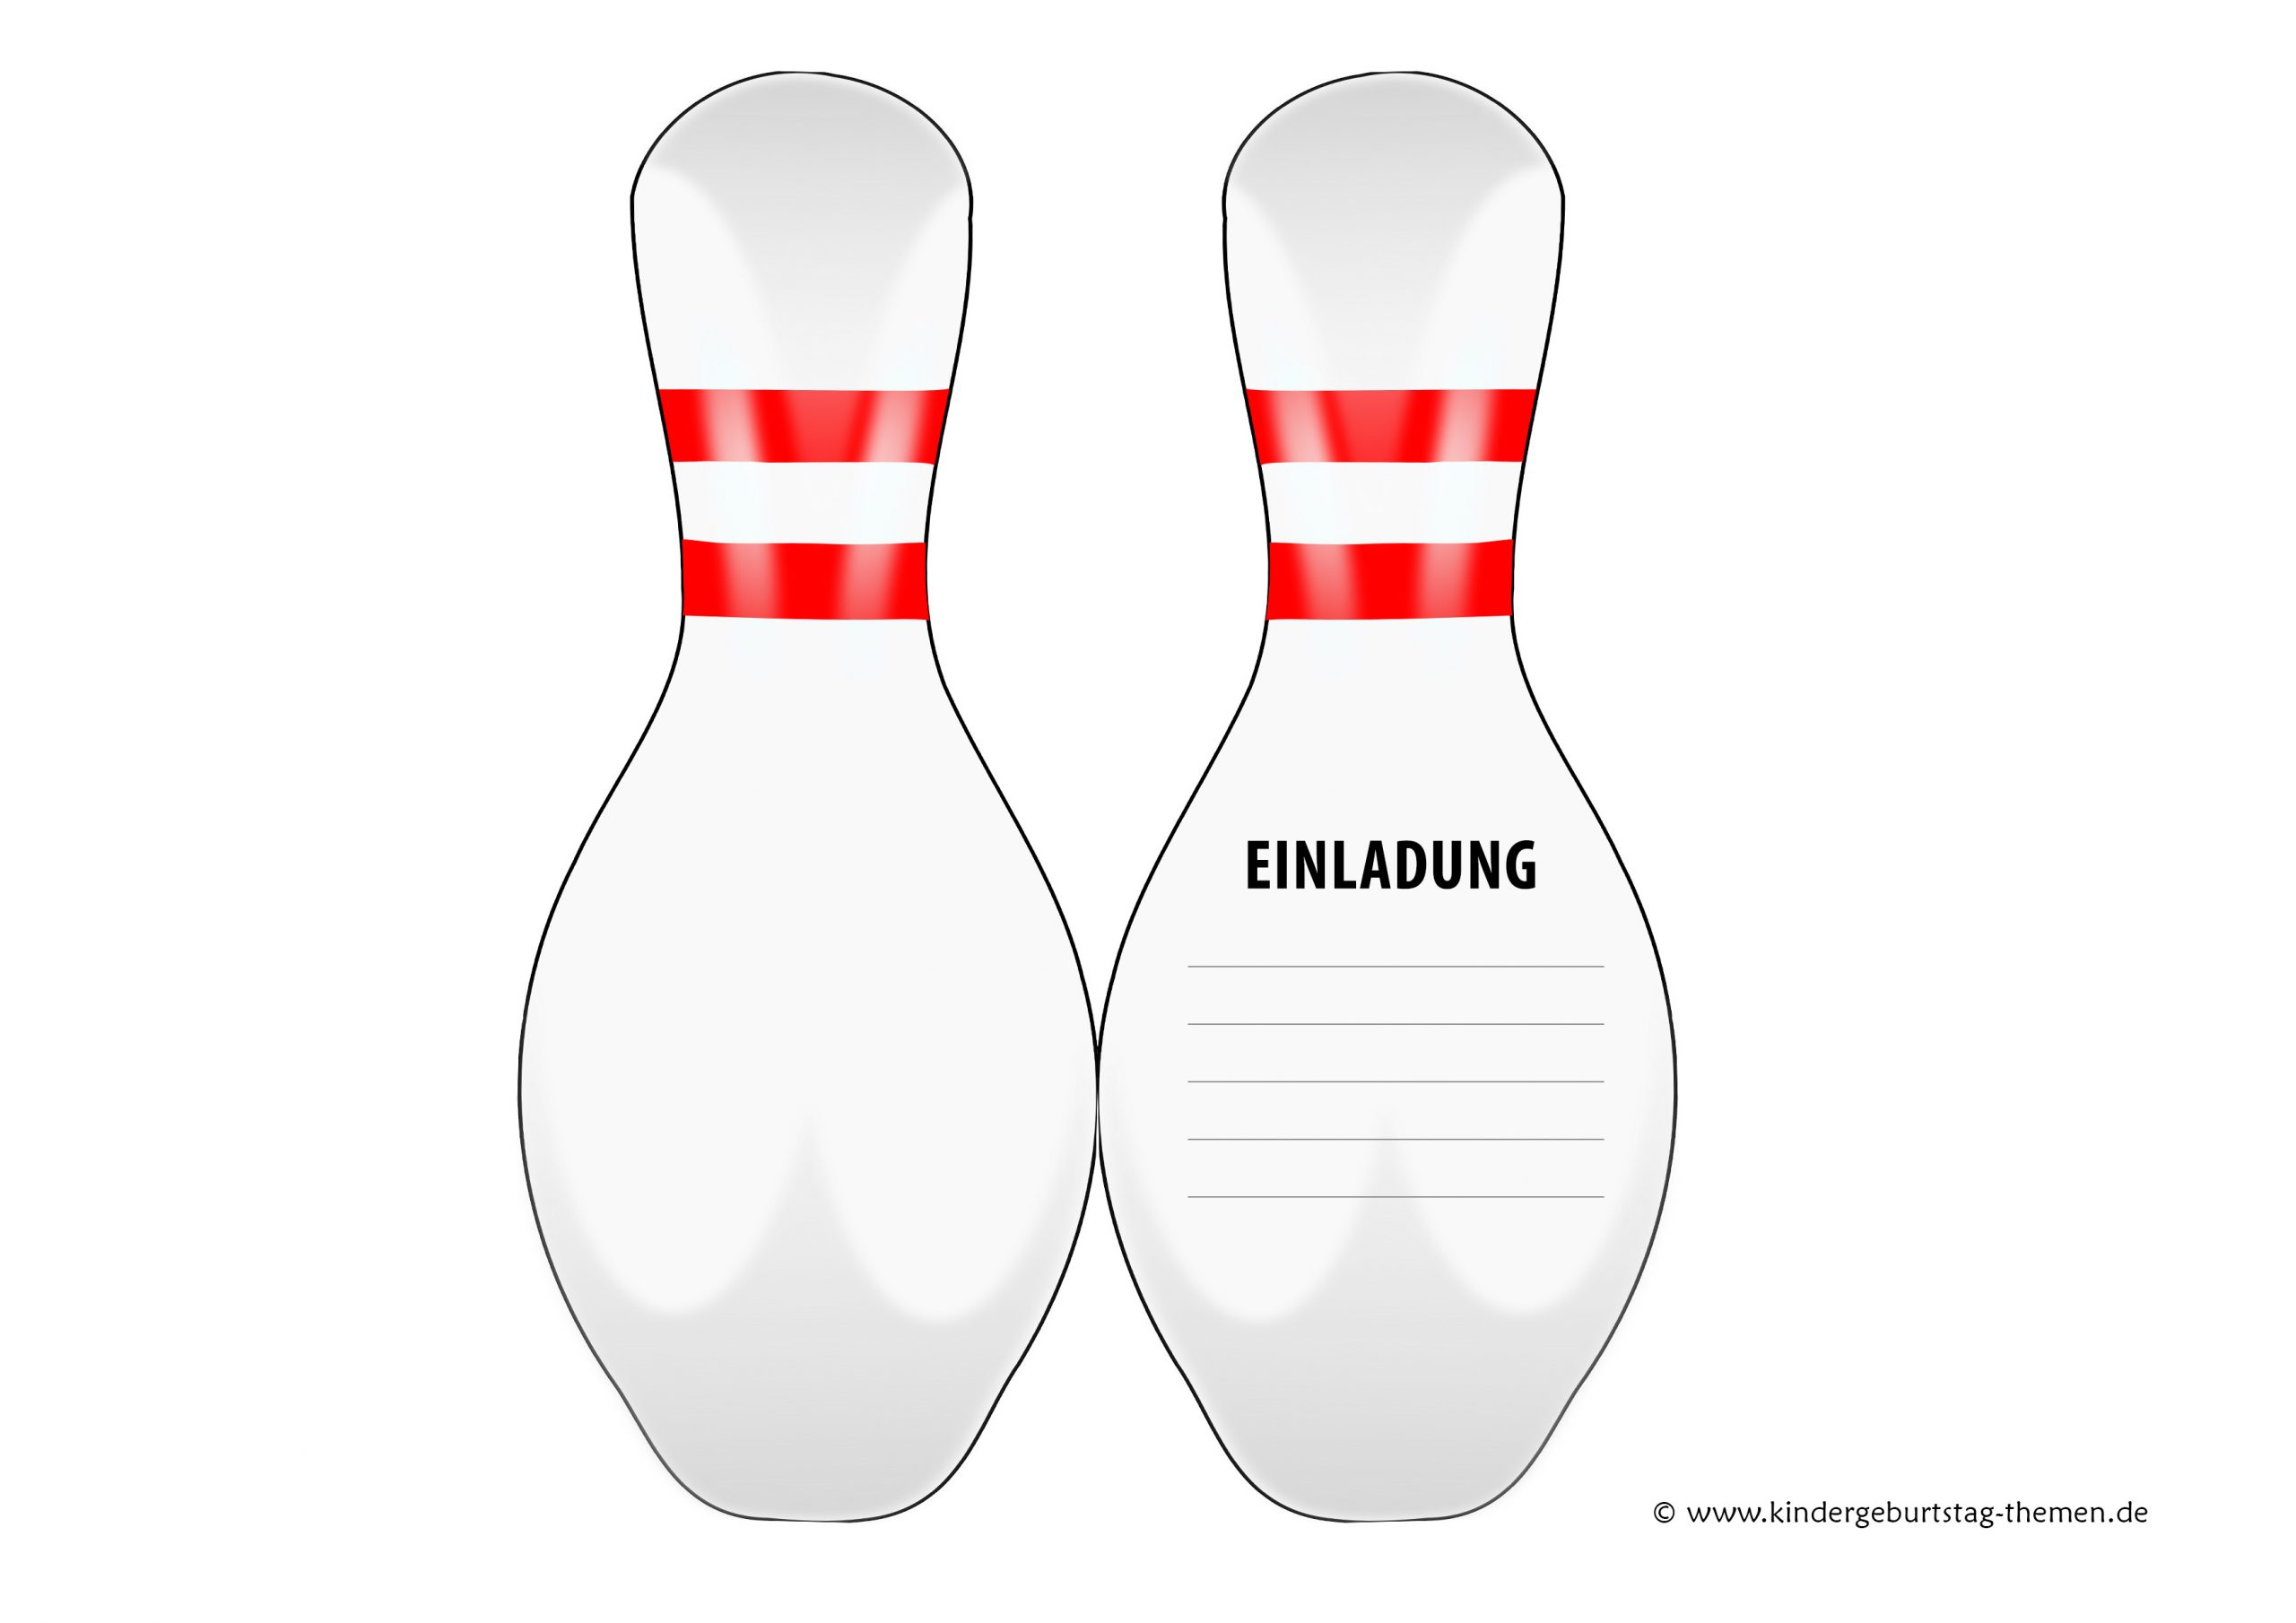 Einladung Kindergeburtstag Bowling (Kegeln): Kostenlose verwandt mit Bastelvorlage Kegel